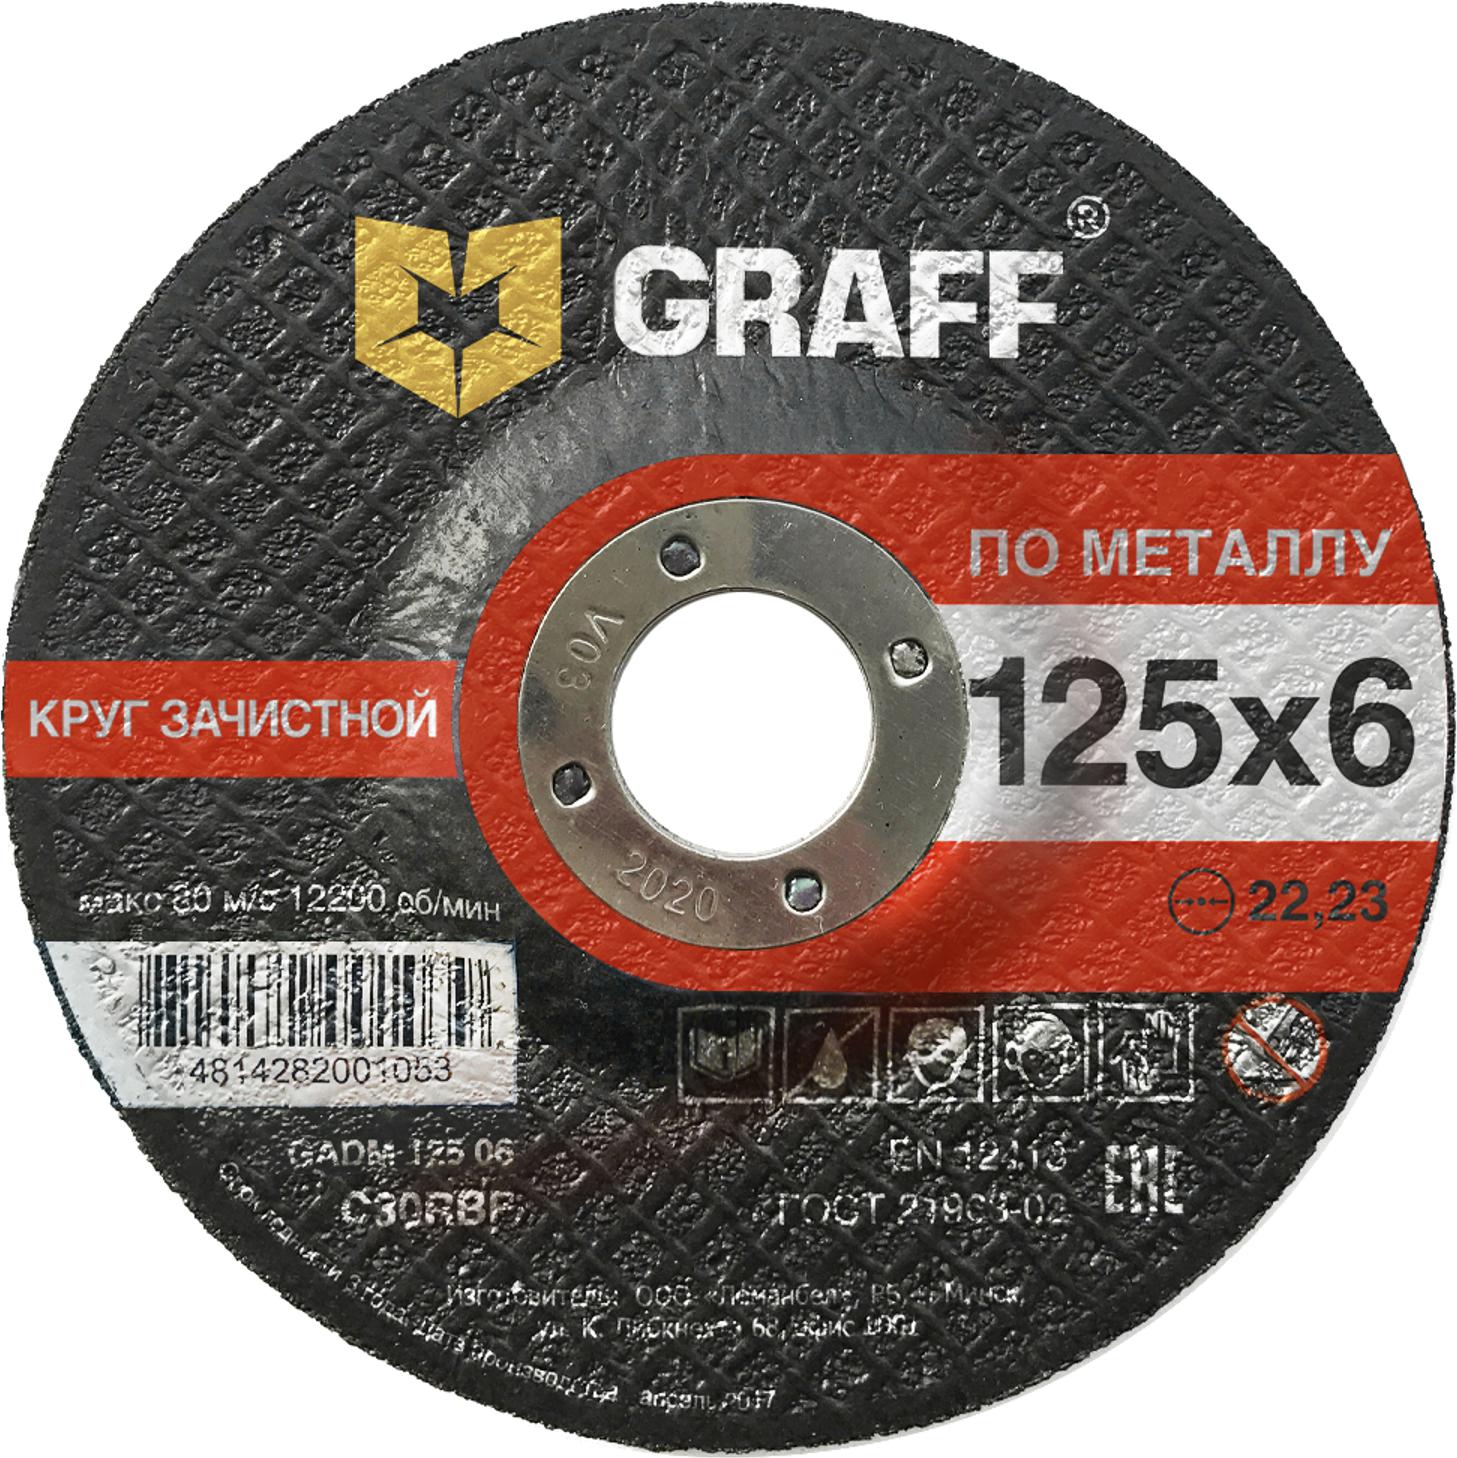 Круг зачистной GRAFF GADM 125 06 круг зачистной на оправке пурпурный roxpro clean